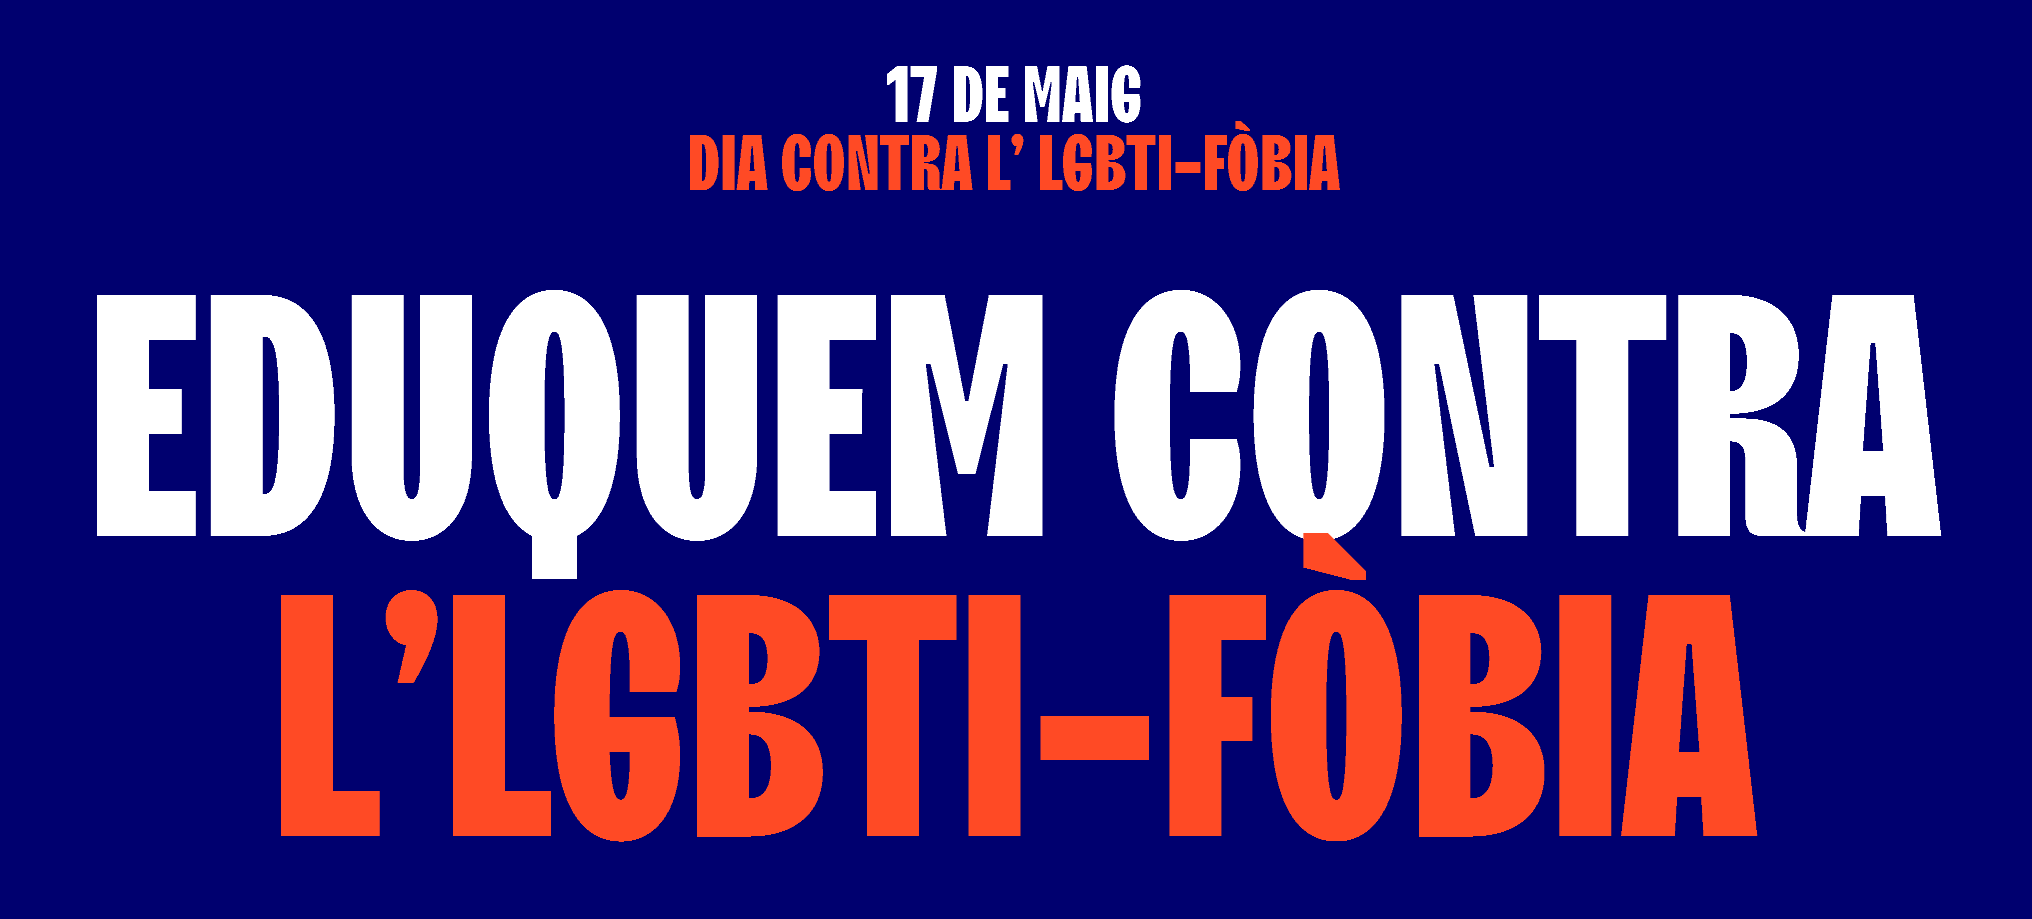 Dia contra l'LGBTI-fòbia 17 de maig